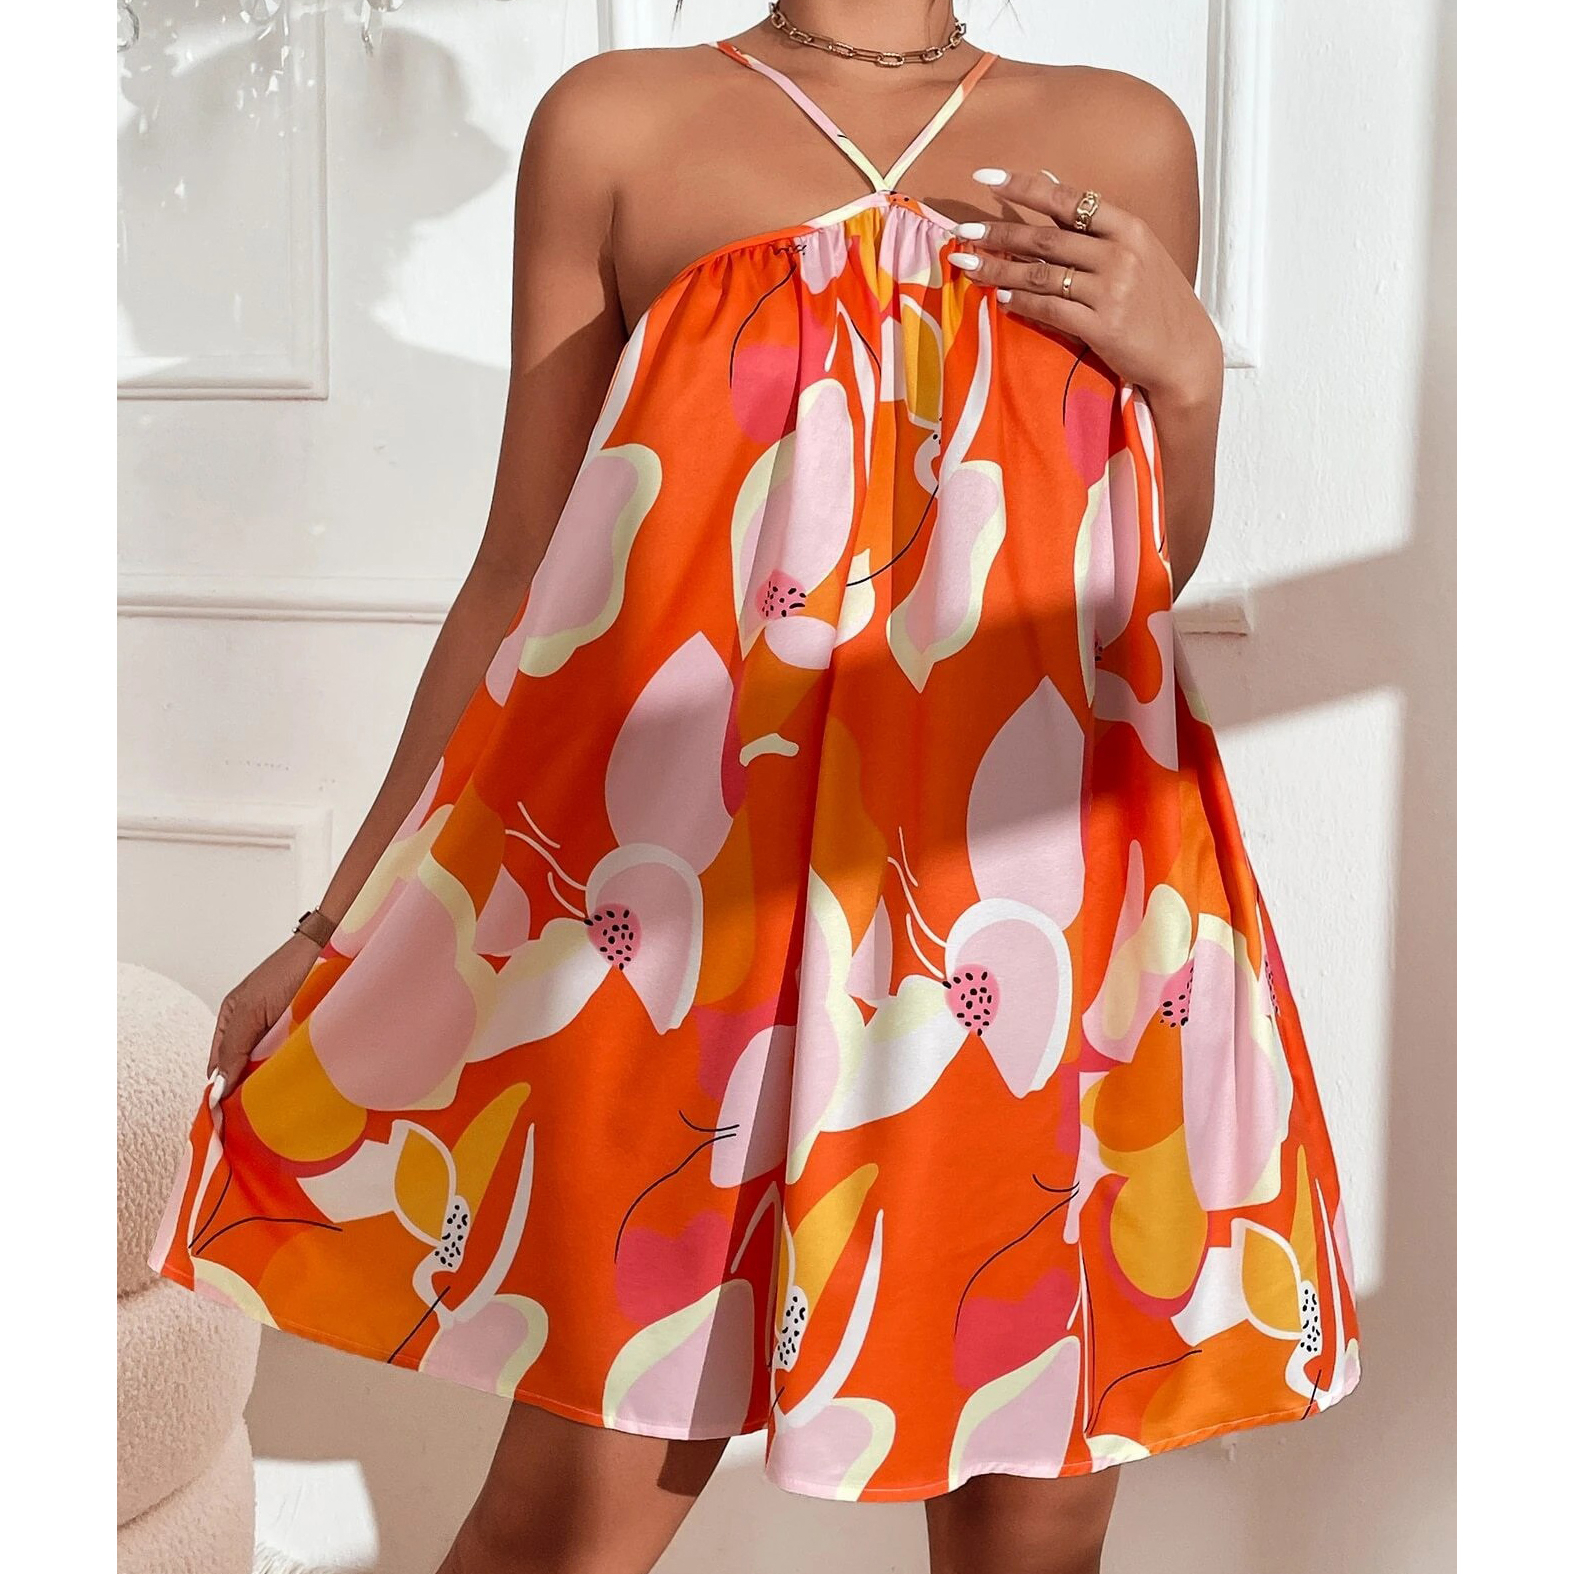 Allover Print Cami Dress - Orange, Small(4)